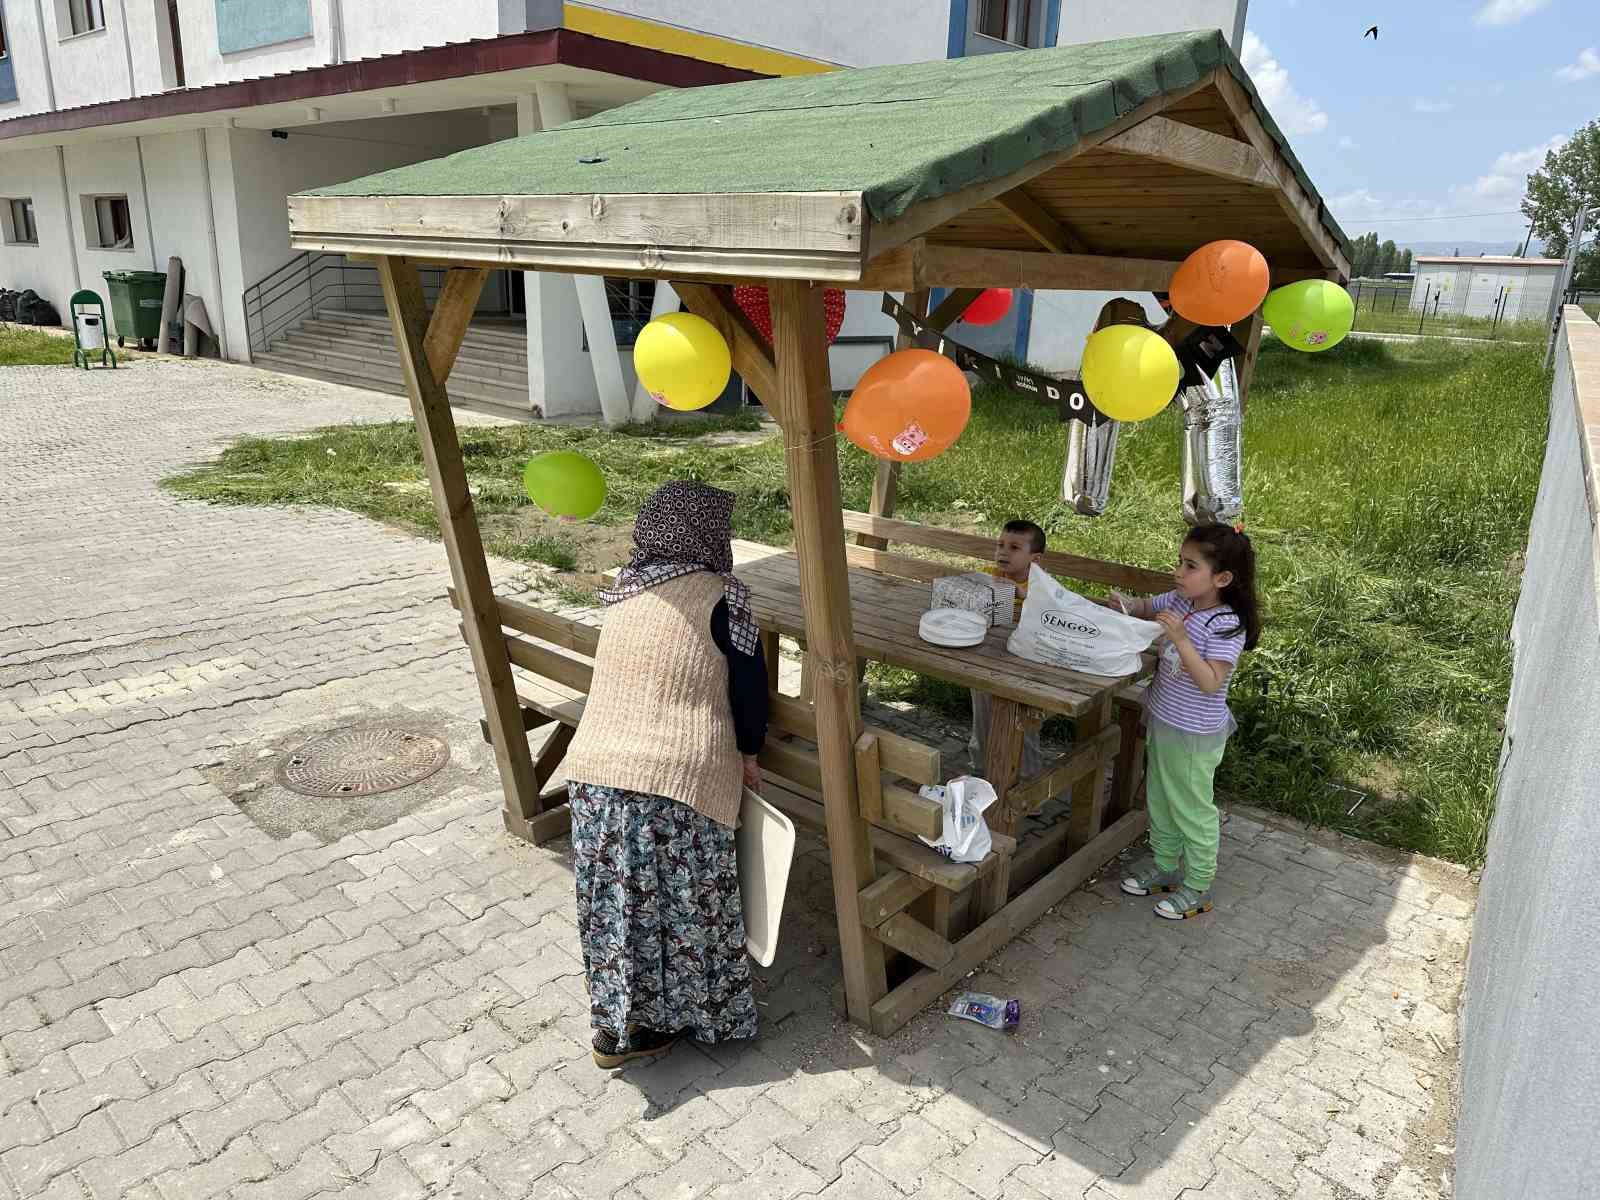 KYK yurdunda yaşayan depremzede çocuğa sürpriz doğum günü kutlaması